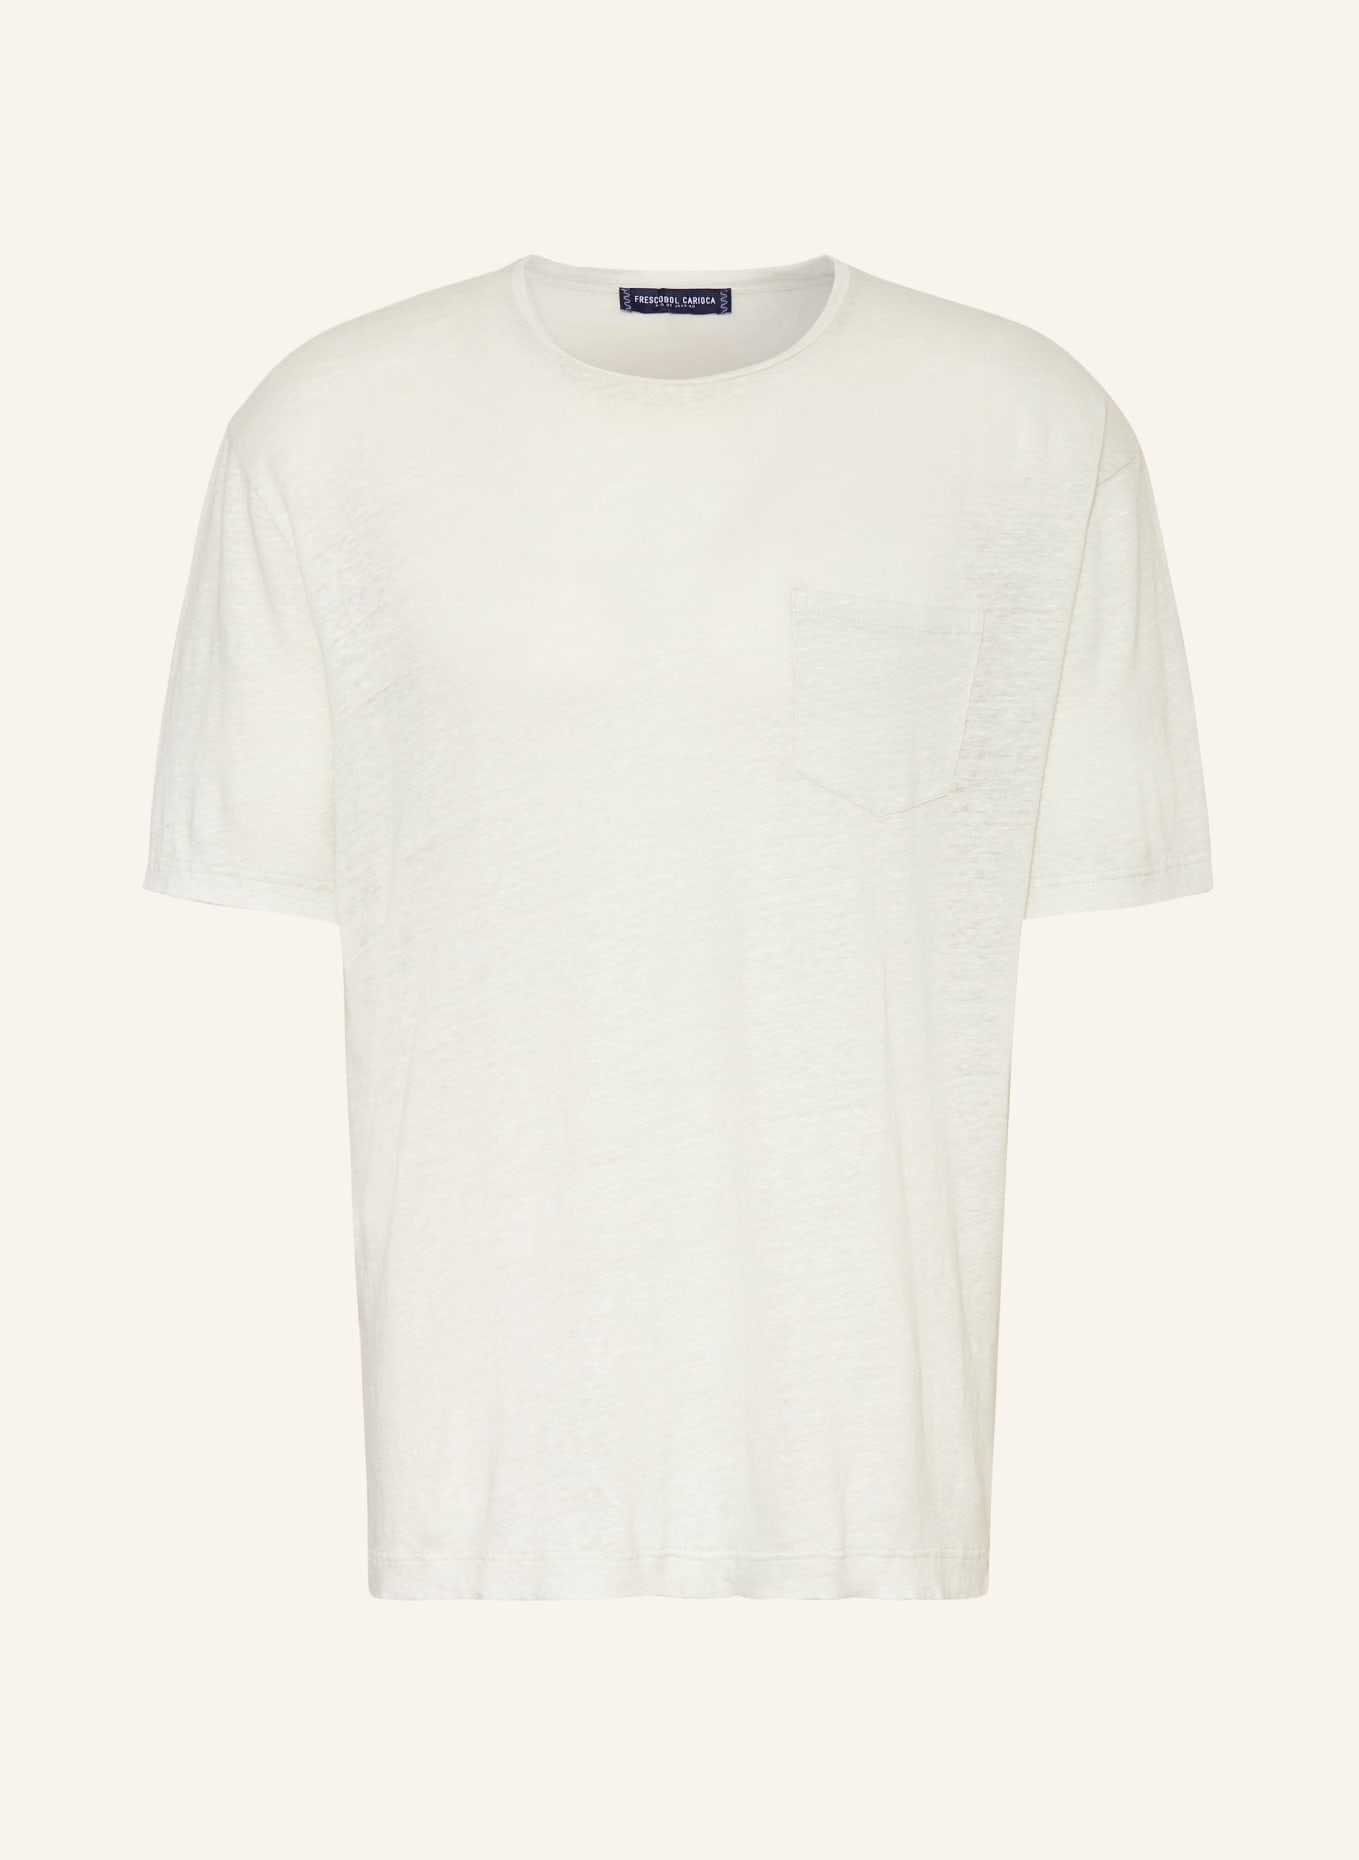 FRESCOBOL CARIOCA T-shirt CARMO made of linen, Color: MINT (Image 1)